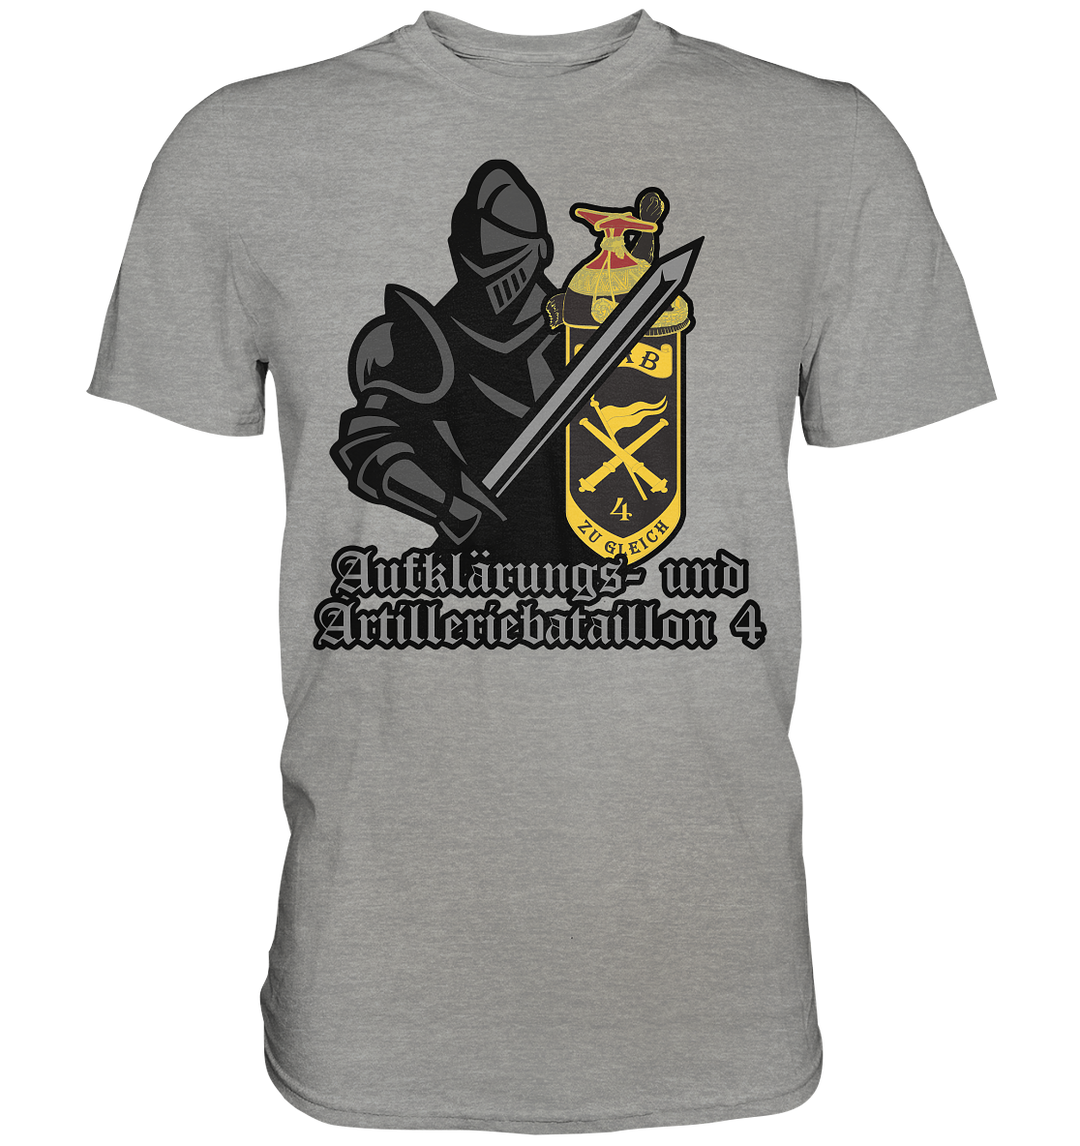 "Aufklärungs- und Artilleriebataillon 4 mit Ritter" - Premium Shirt